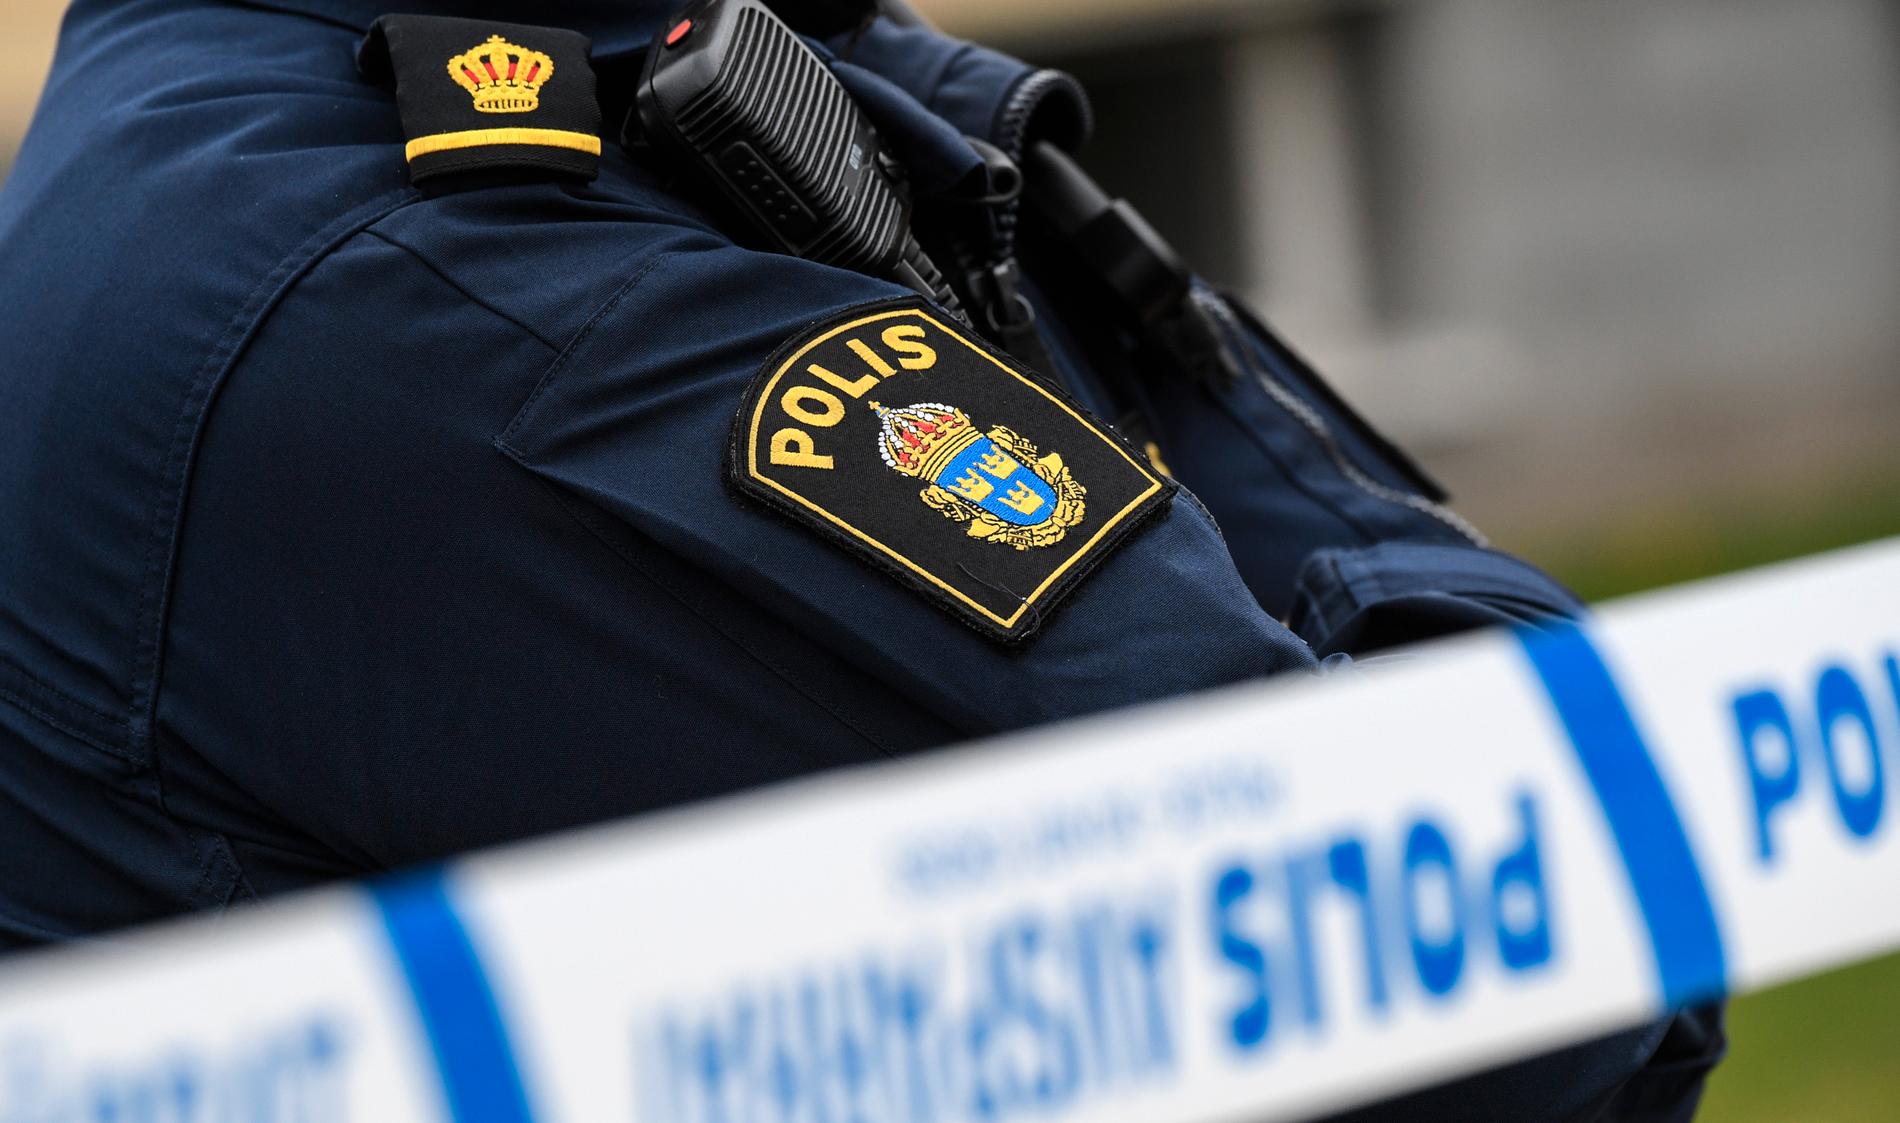 Två gärningsmän bröt sig in via balkongen i centrala Helsingborg. En anmälan om grovt rån har upprättats. Arkivbild.